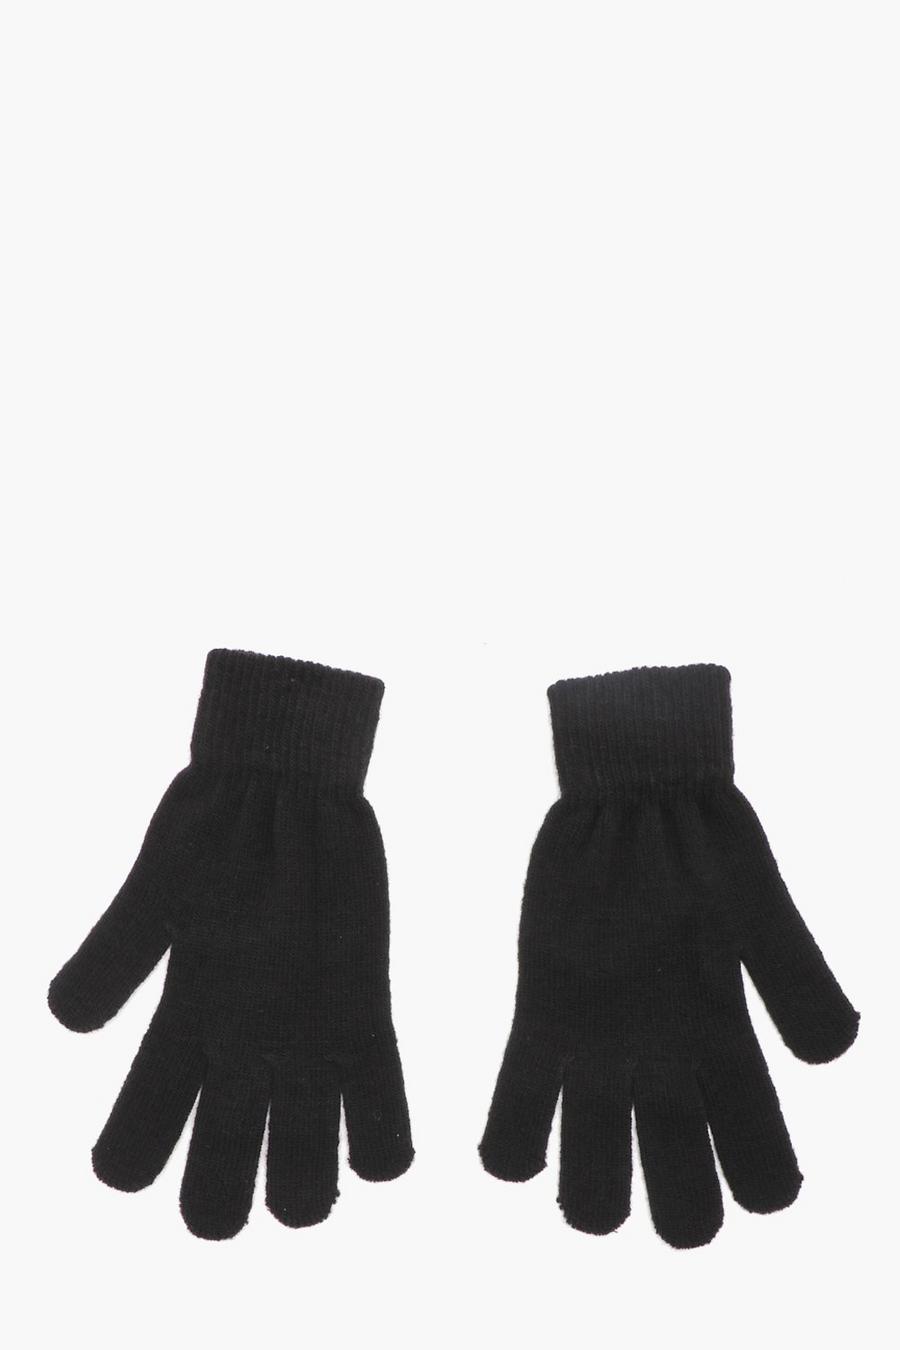 Black Mens Knitted Gloves